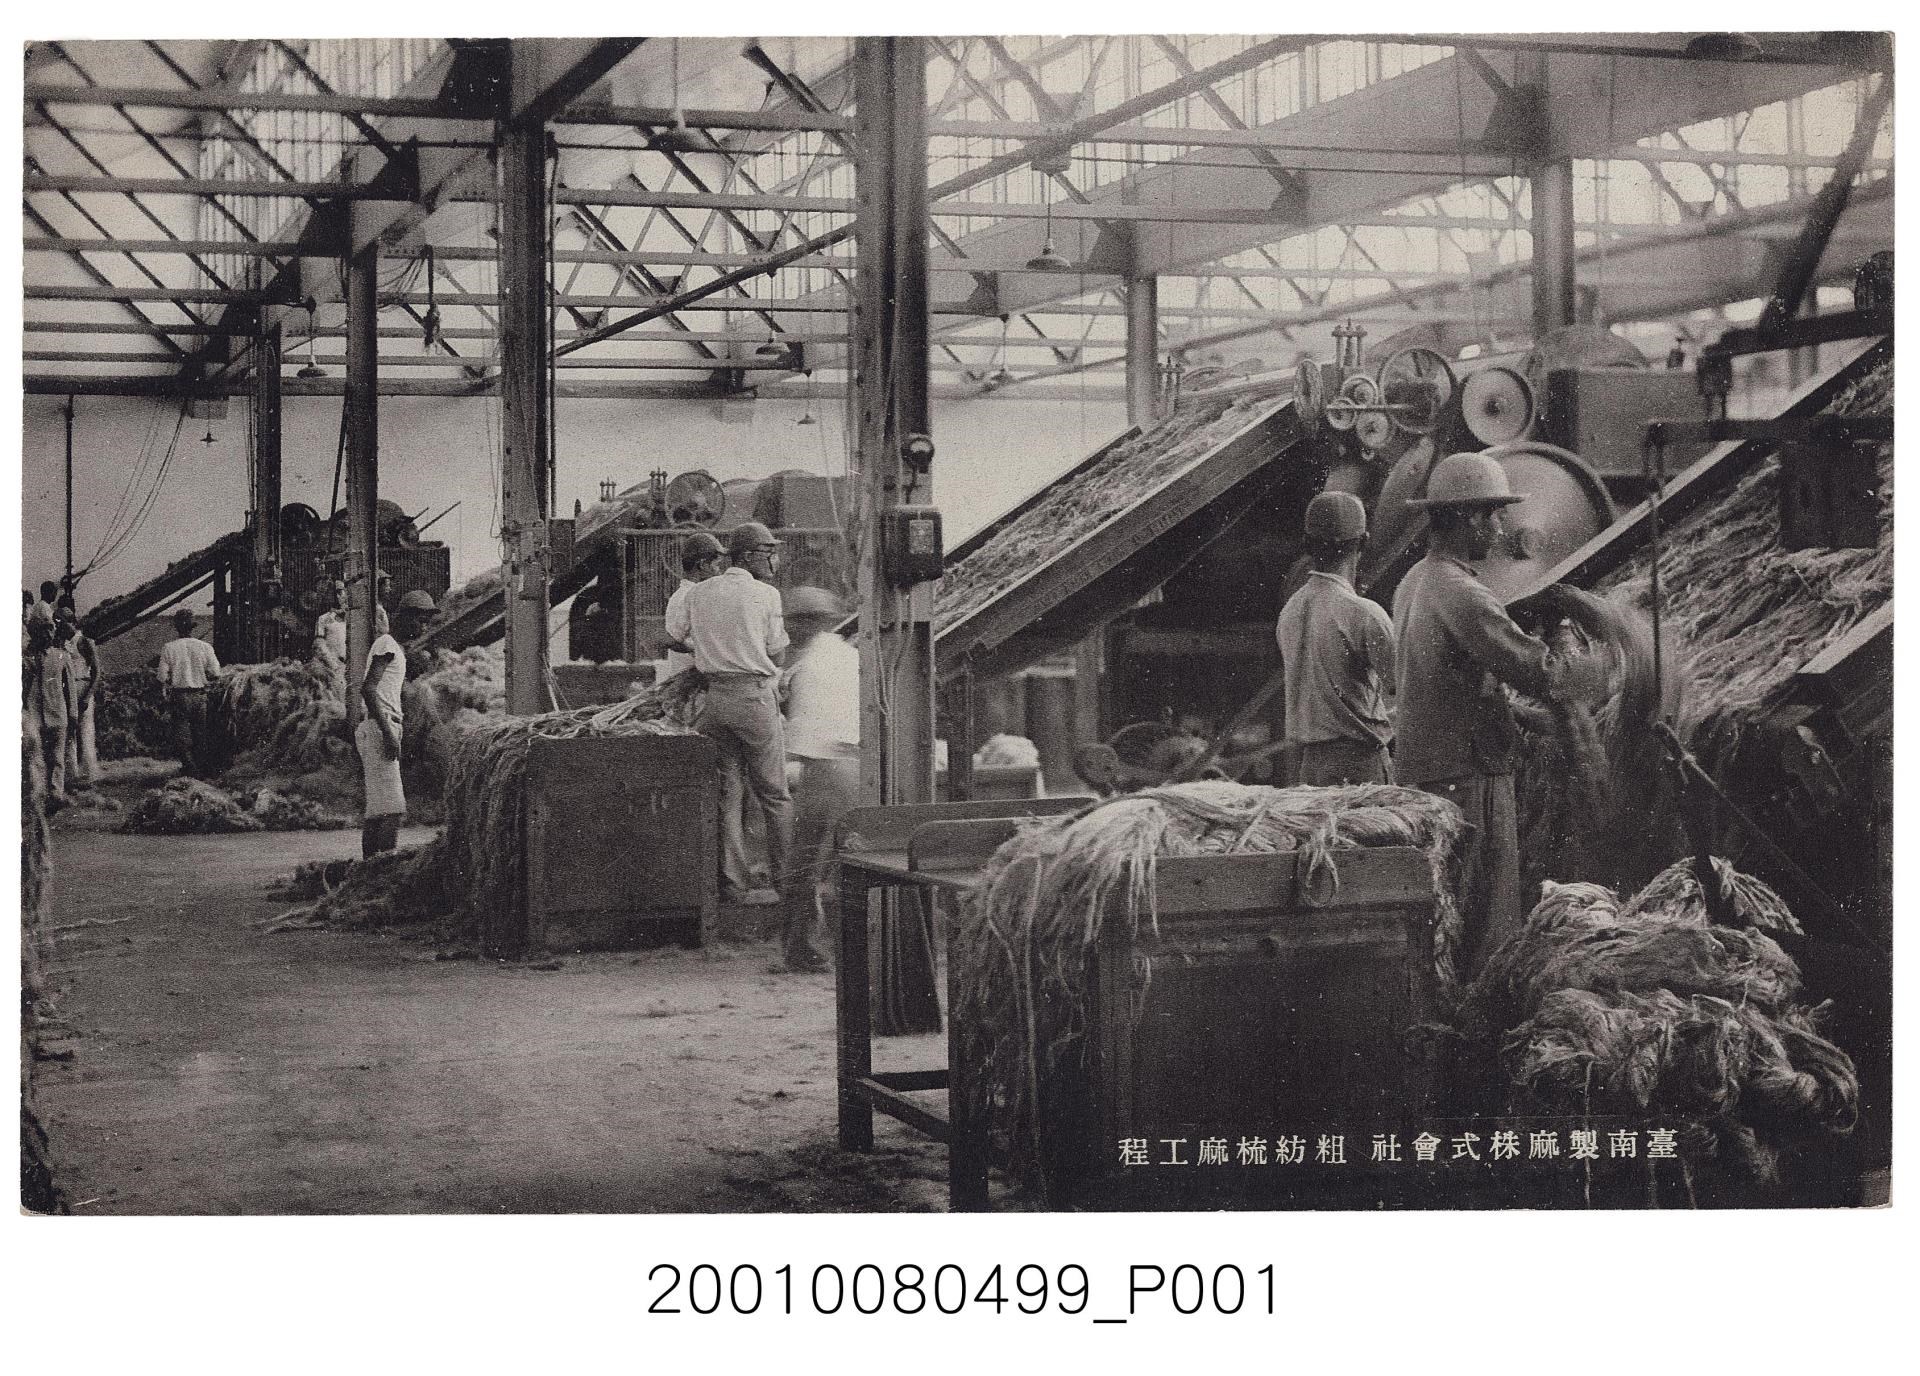 殖民地時代的台灣經濟──黃麻與苧麻紡織